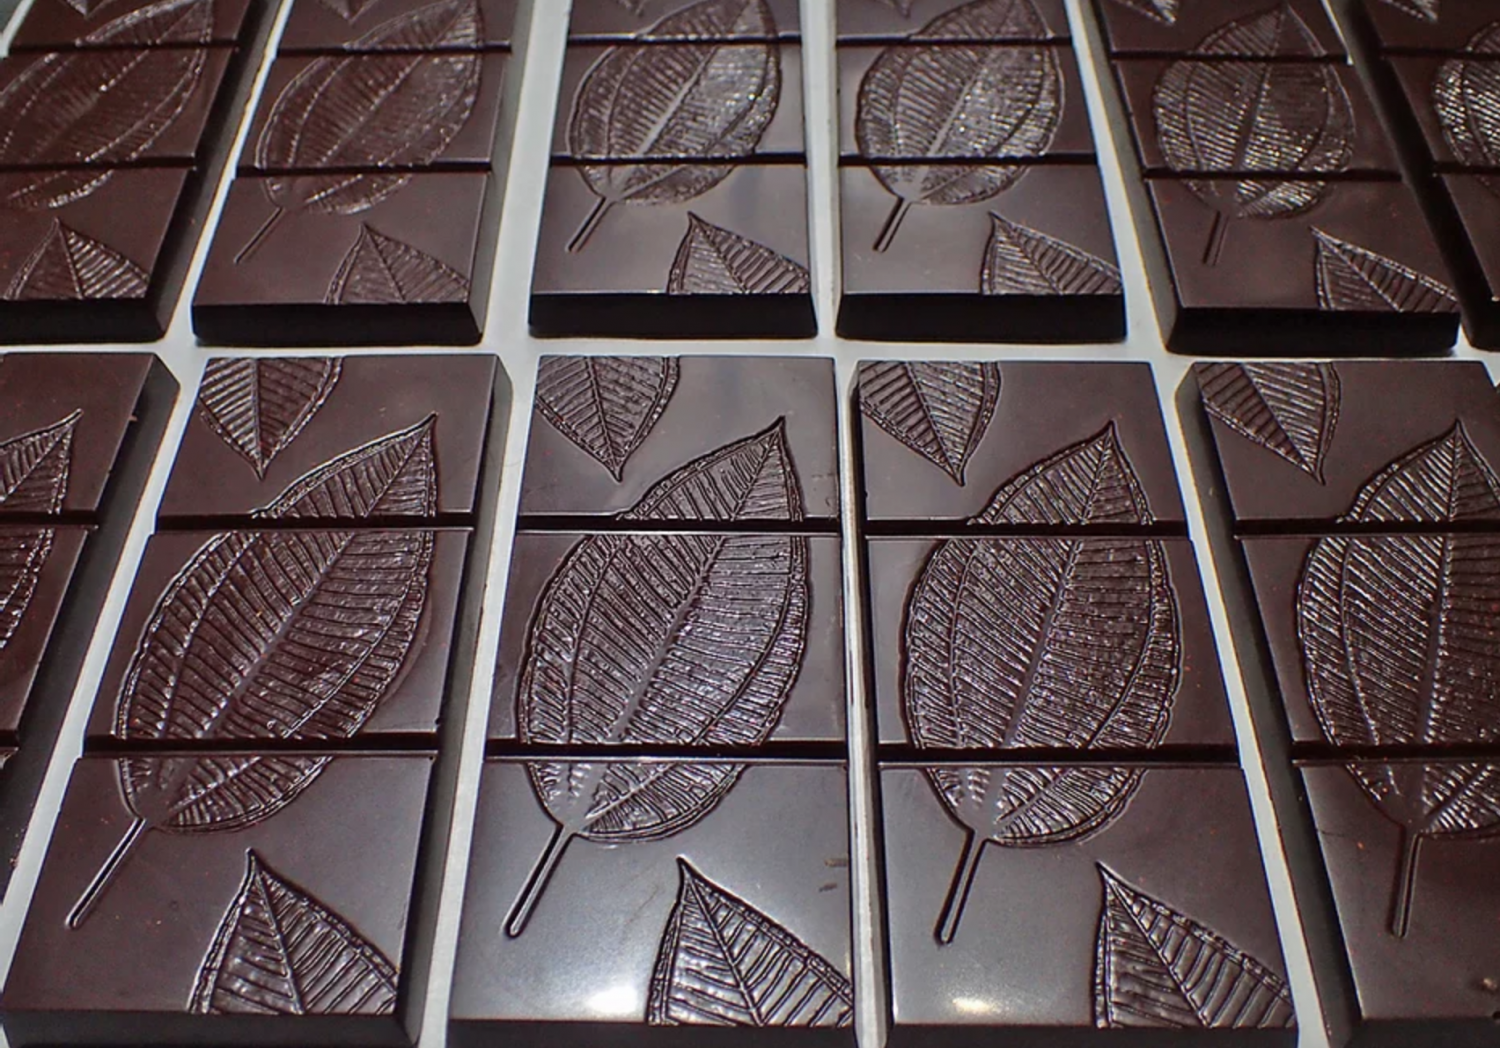 handmade fijian chocolate bars